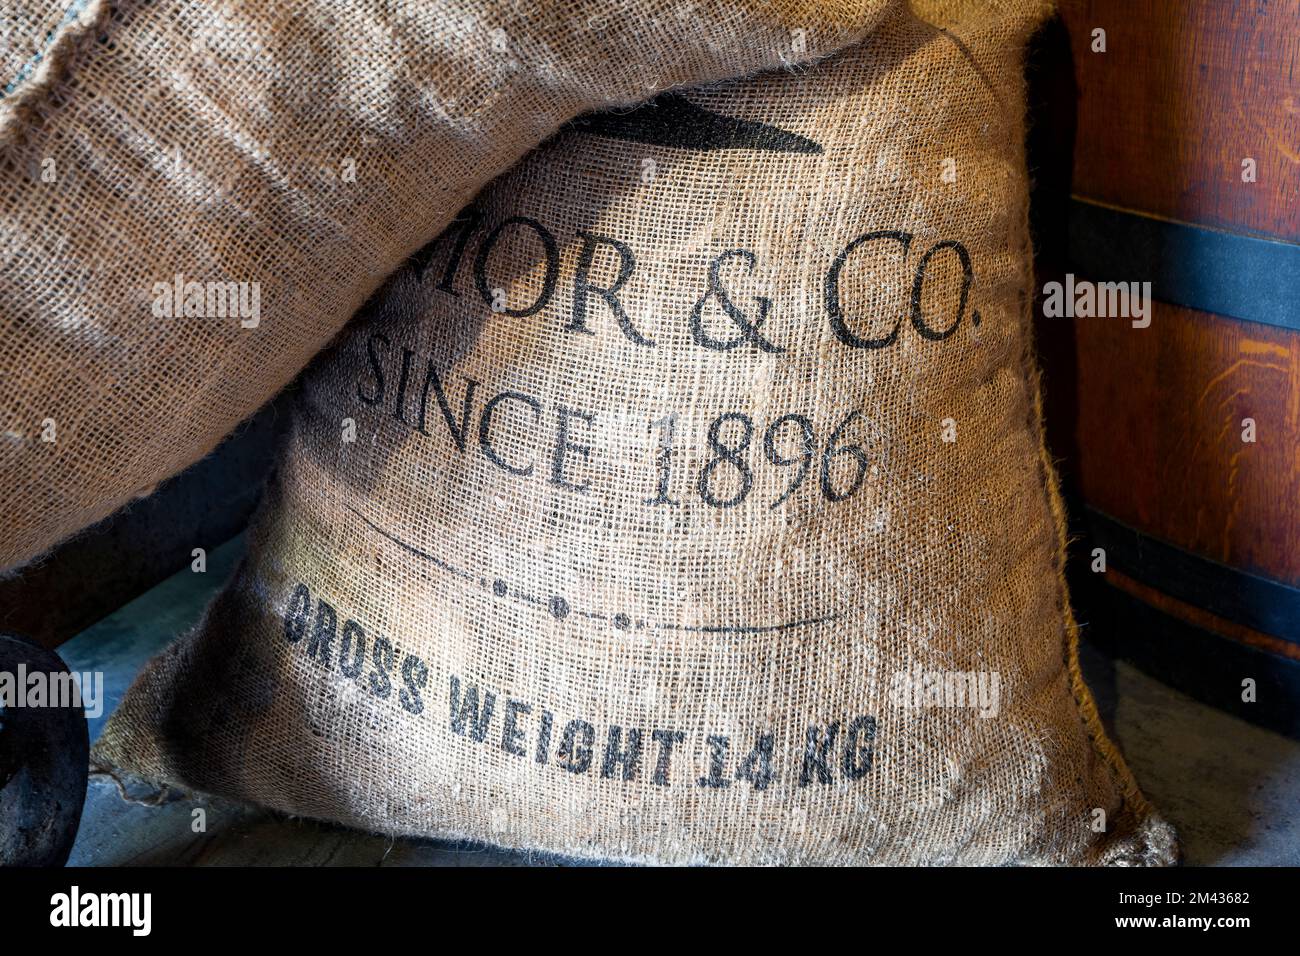 'Senior & Co' vintage burlap bags. Seen in The Curacao Liqueur Distillery at Landhuis Chobolobo, Curacao Stock Photo